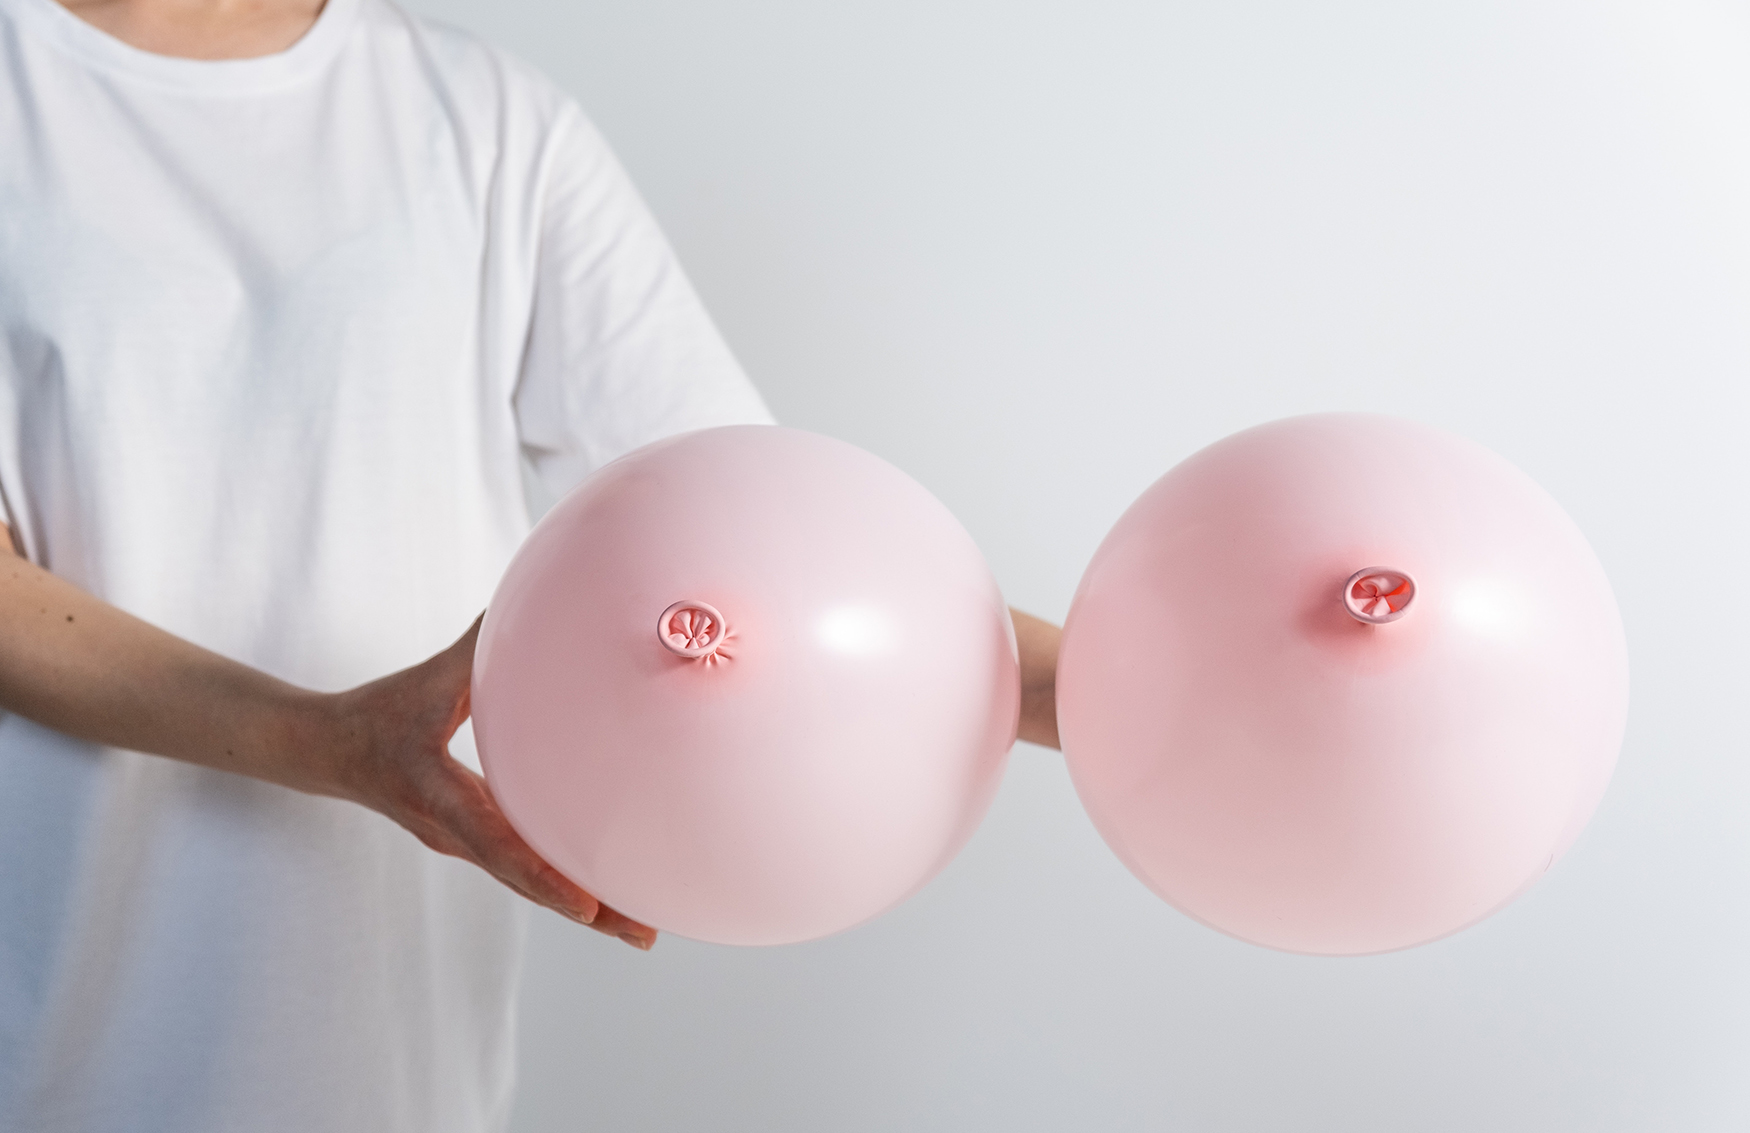 Mitos y verdad sobre el cancer de mama